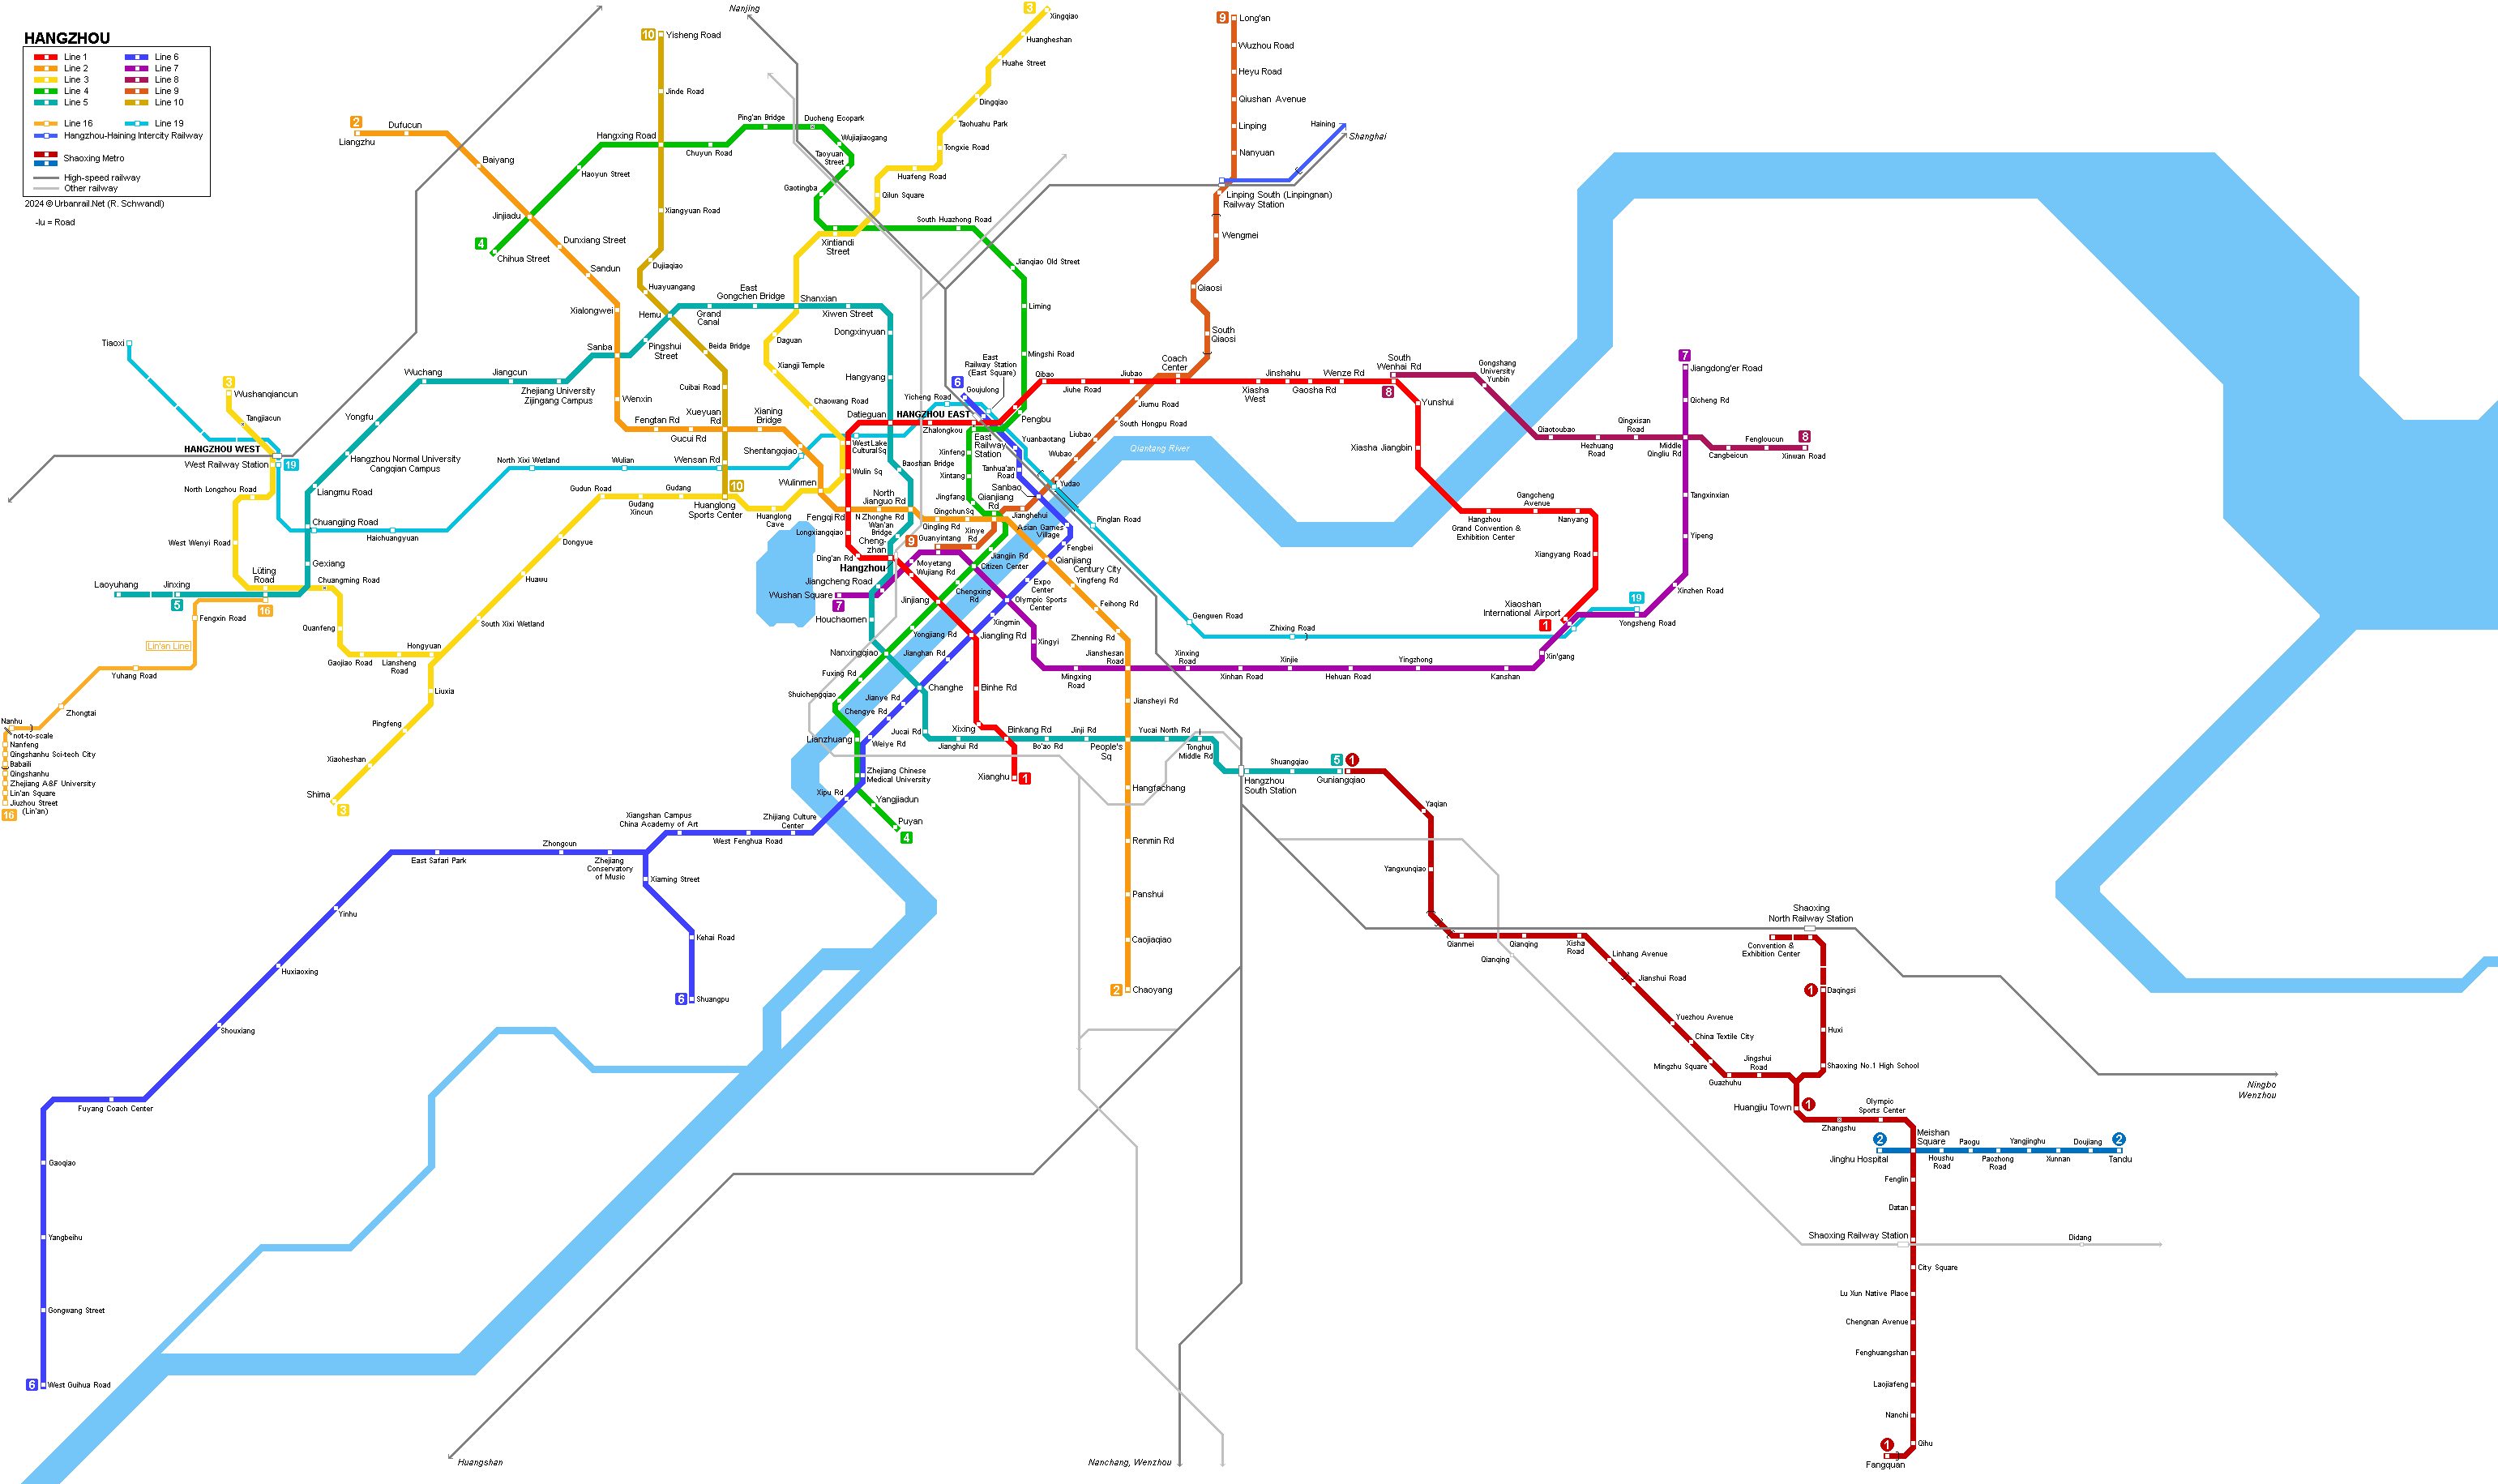 Hangzhou Metro Map